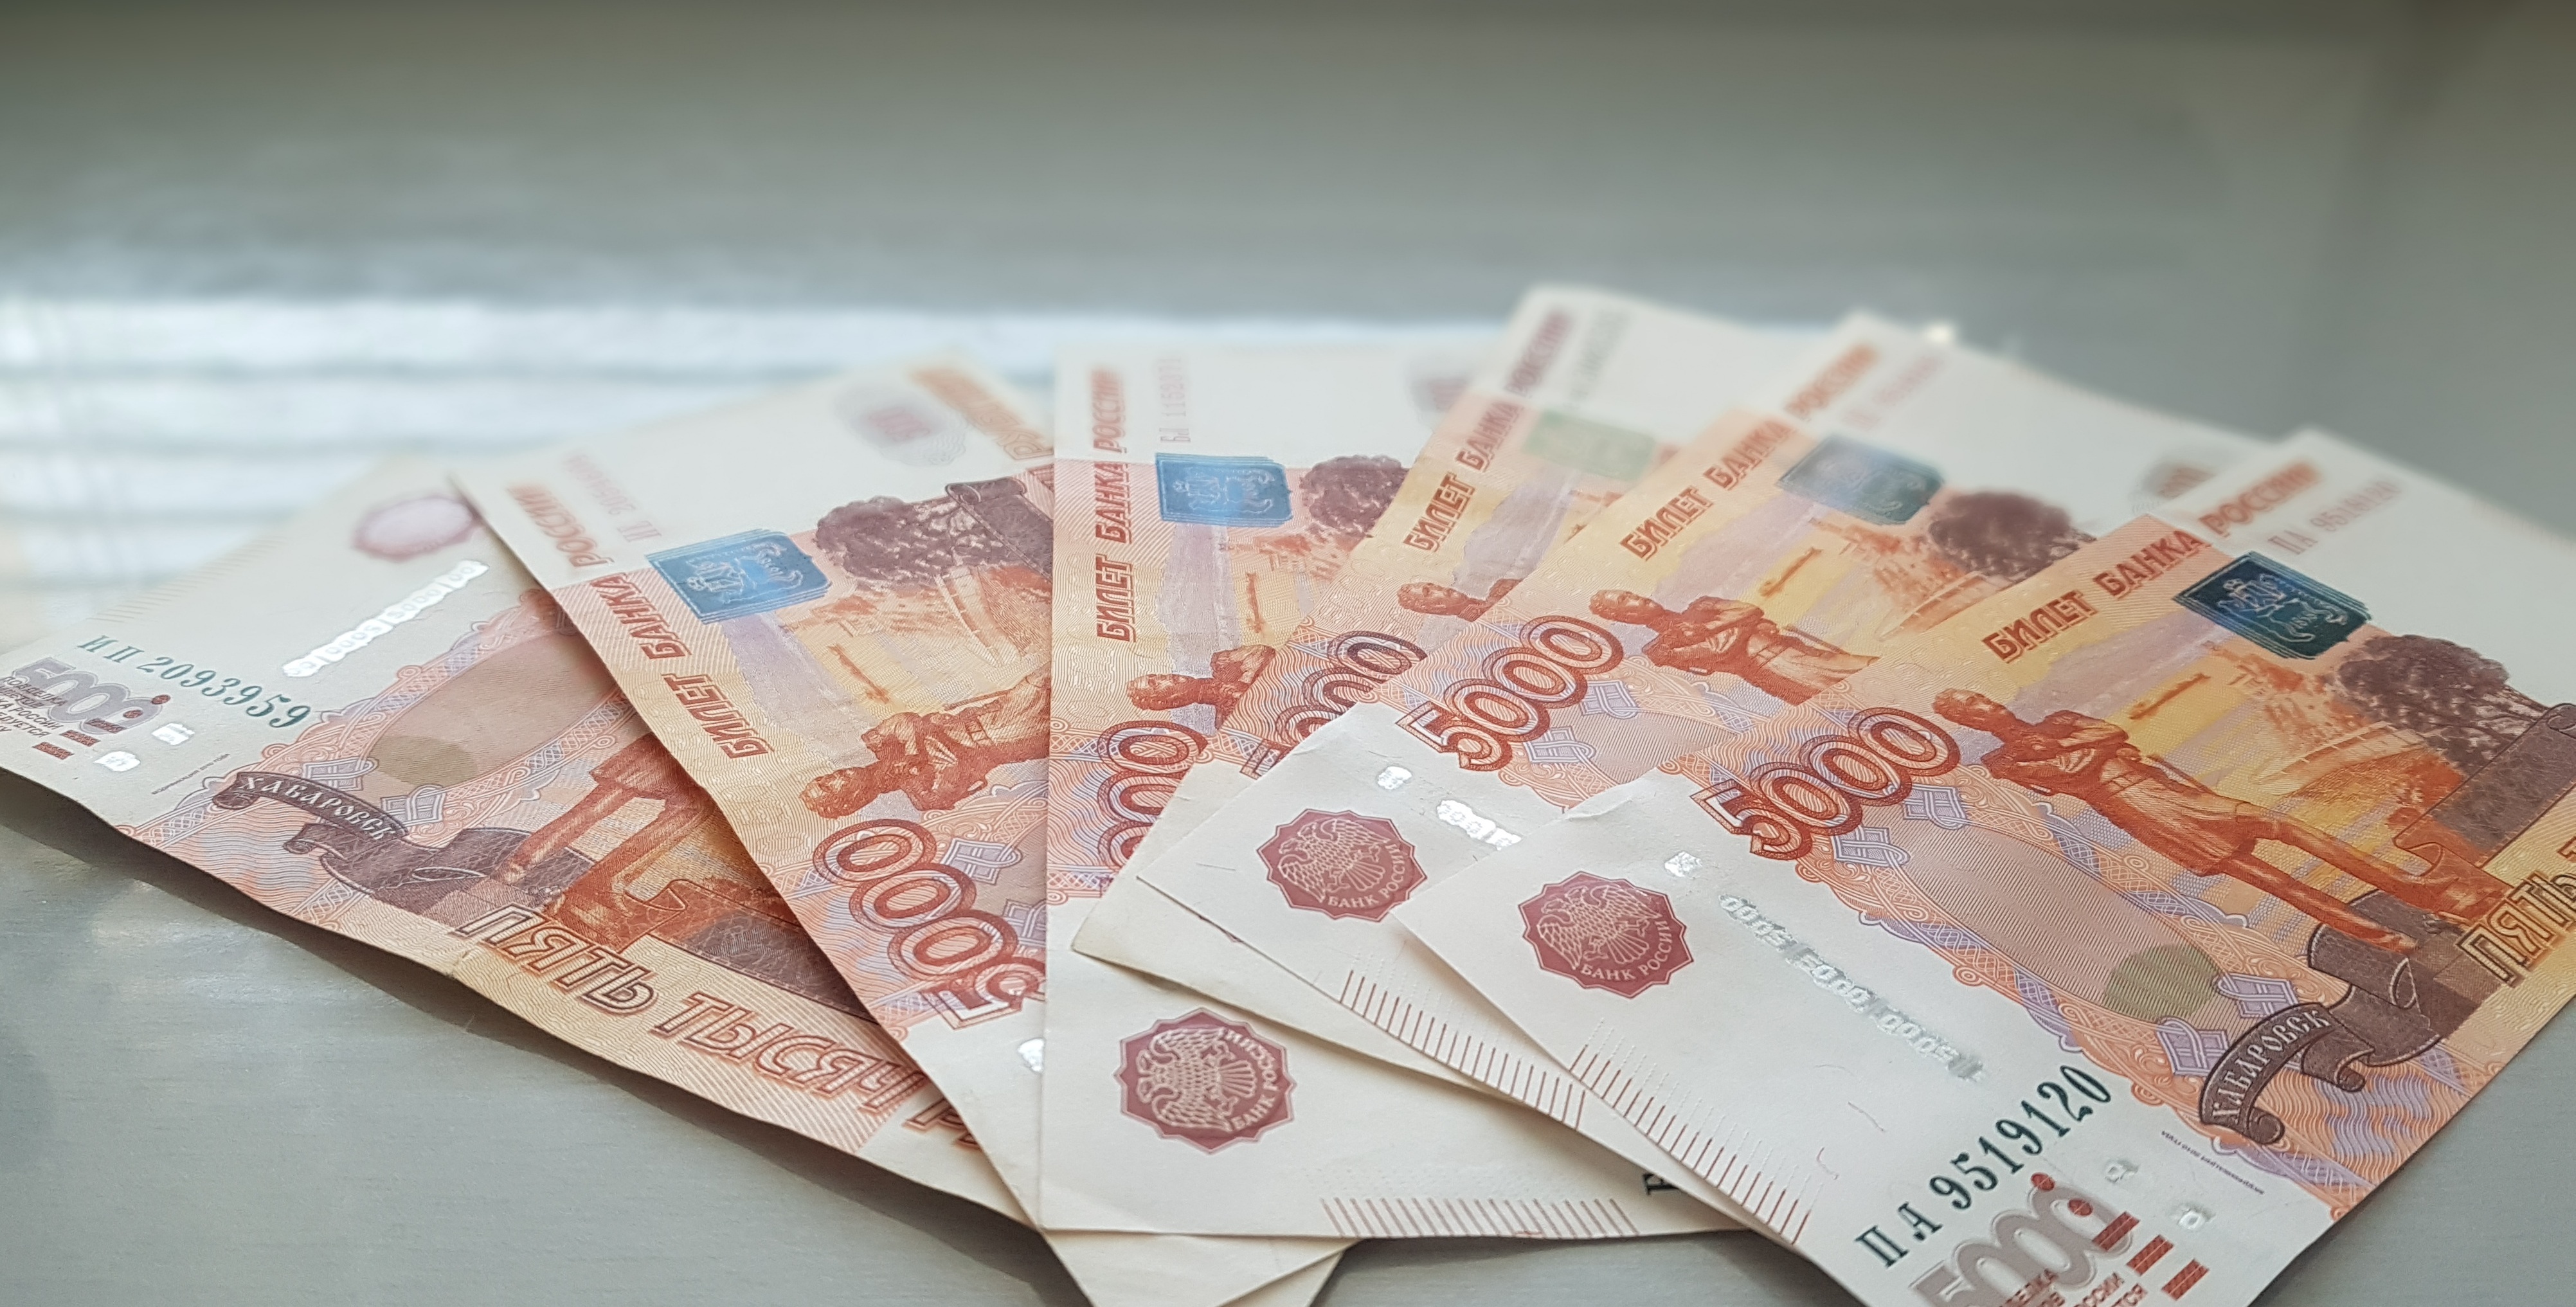 Желая получить интим-услугу, два жителя Башкирии лишились около 370 тысяч рублей